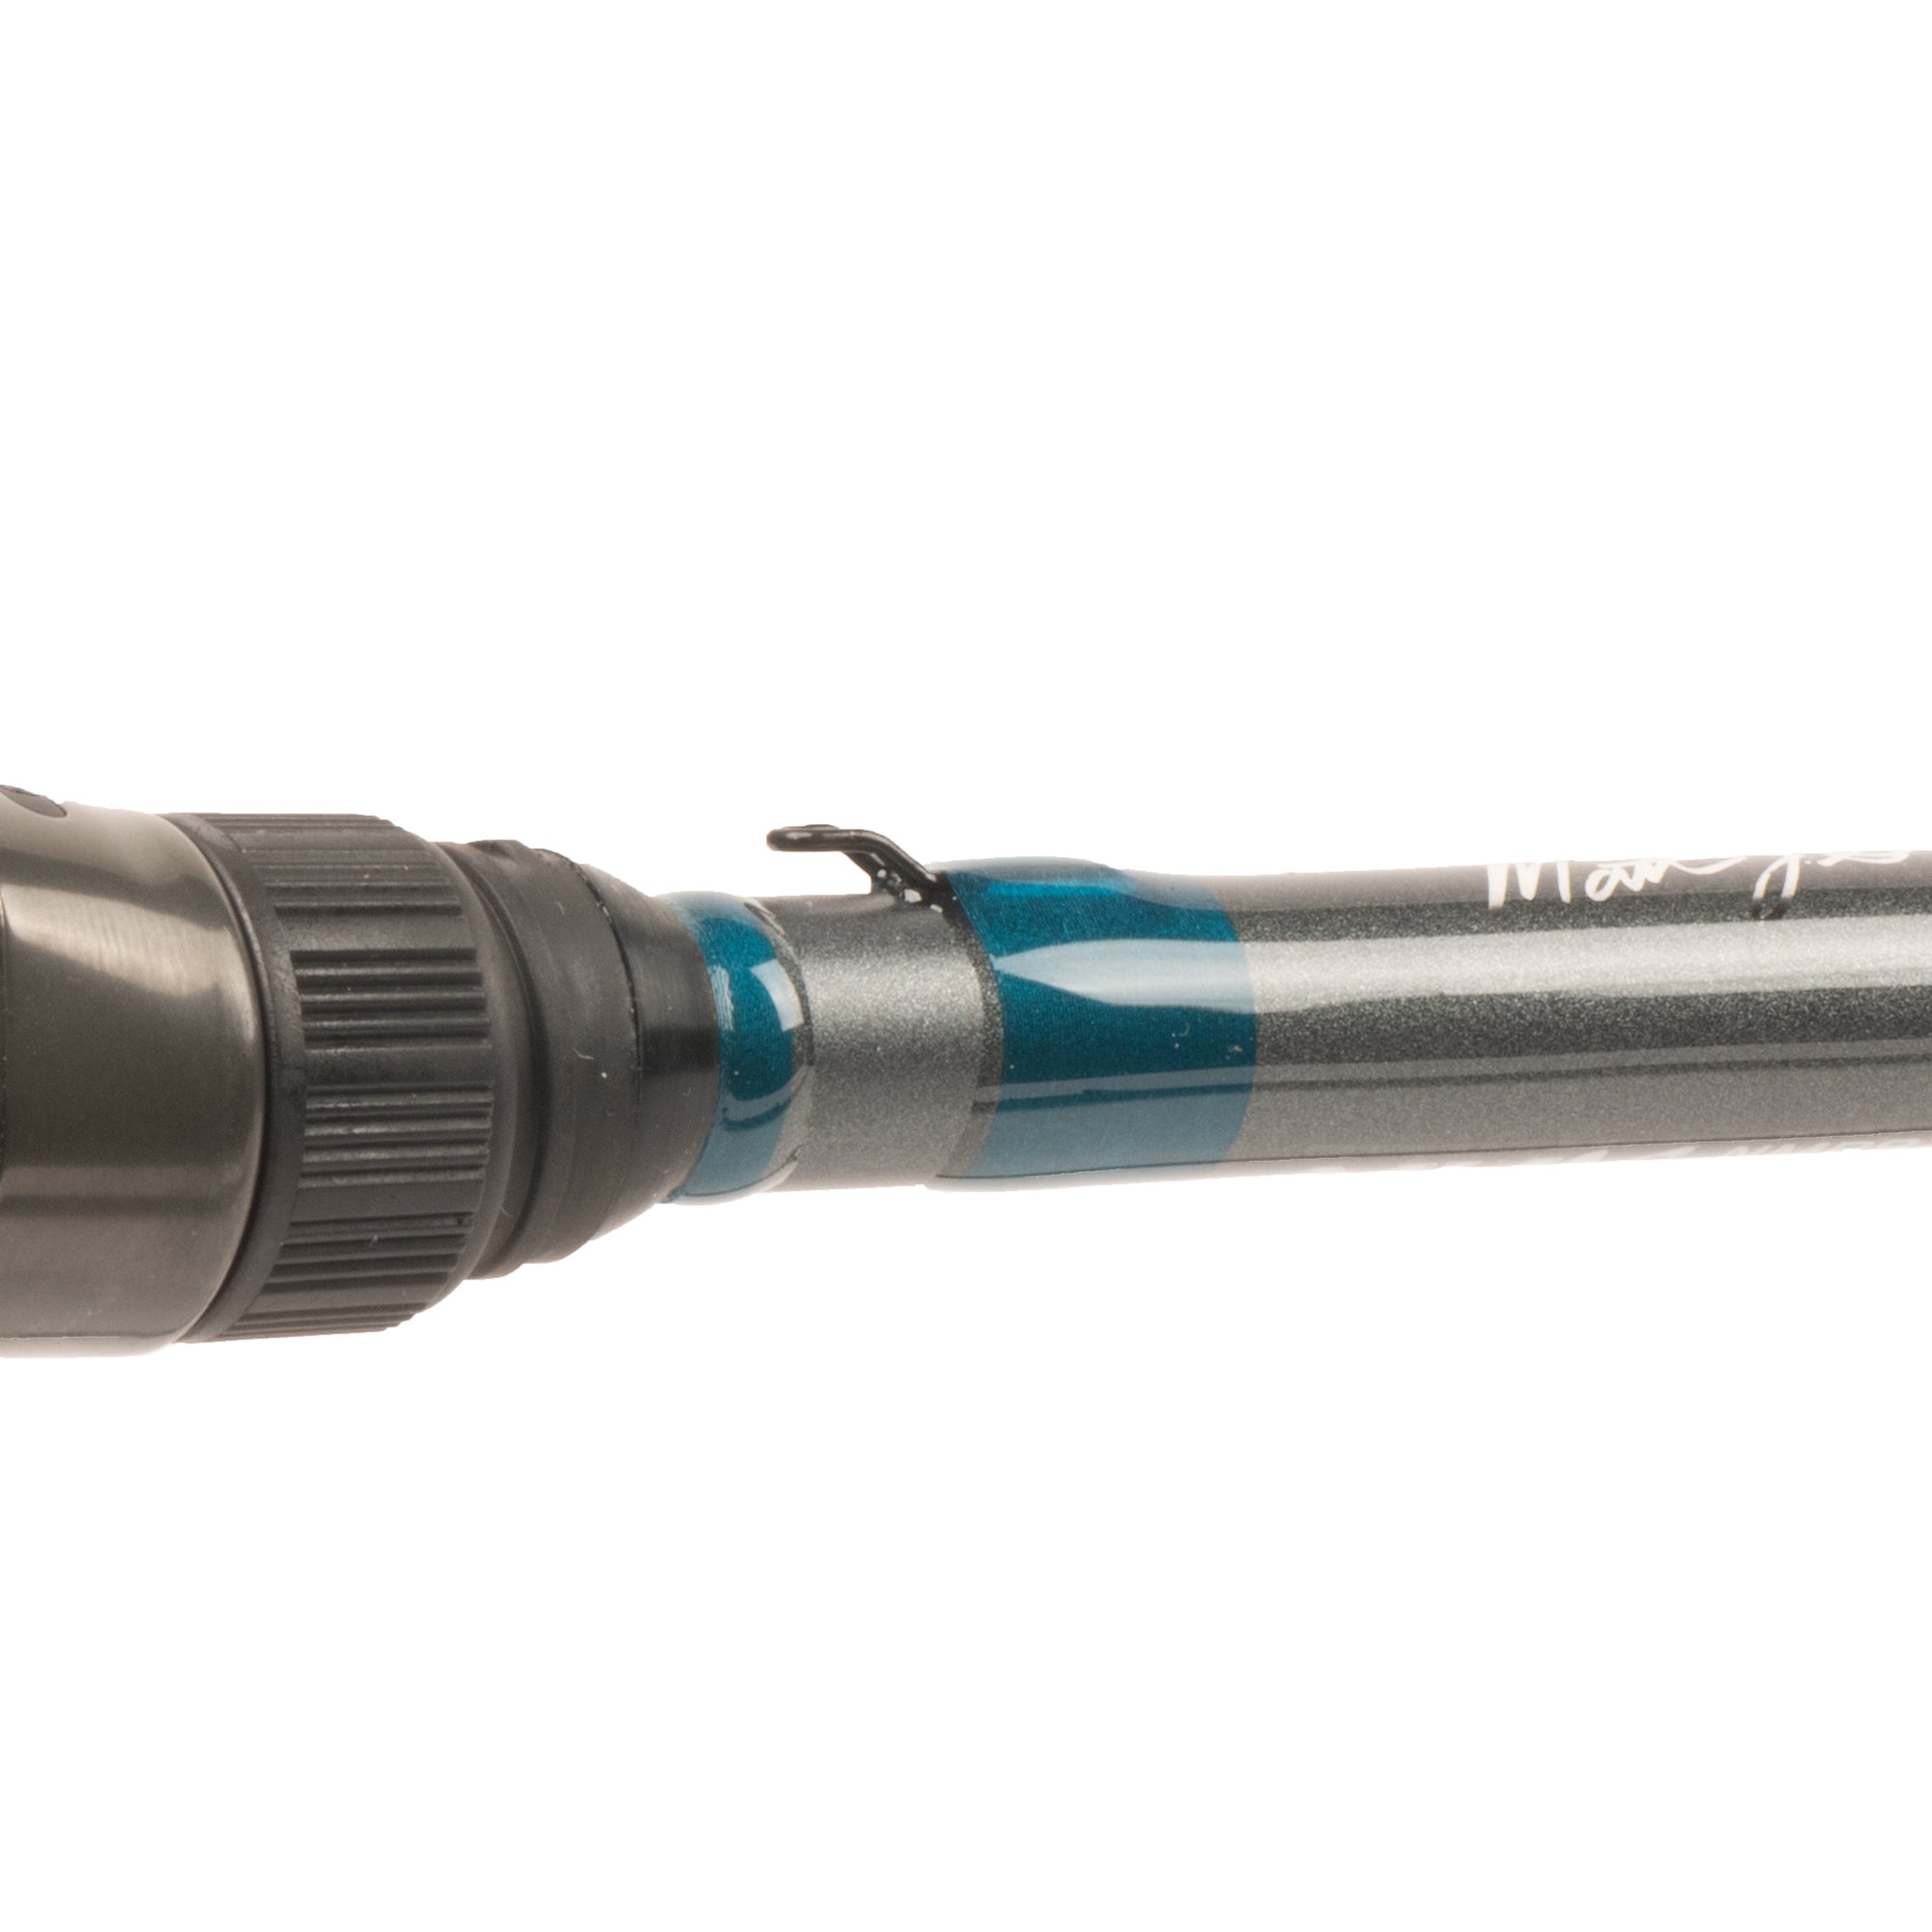 Matt Stefan 7'3" Med-Heavy Super Versatile Baitcasting Rod Component Kit